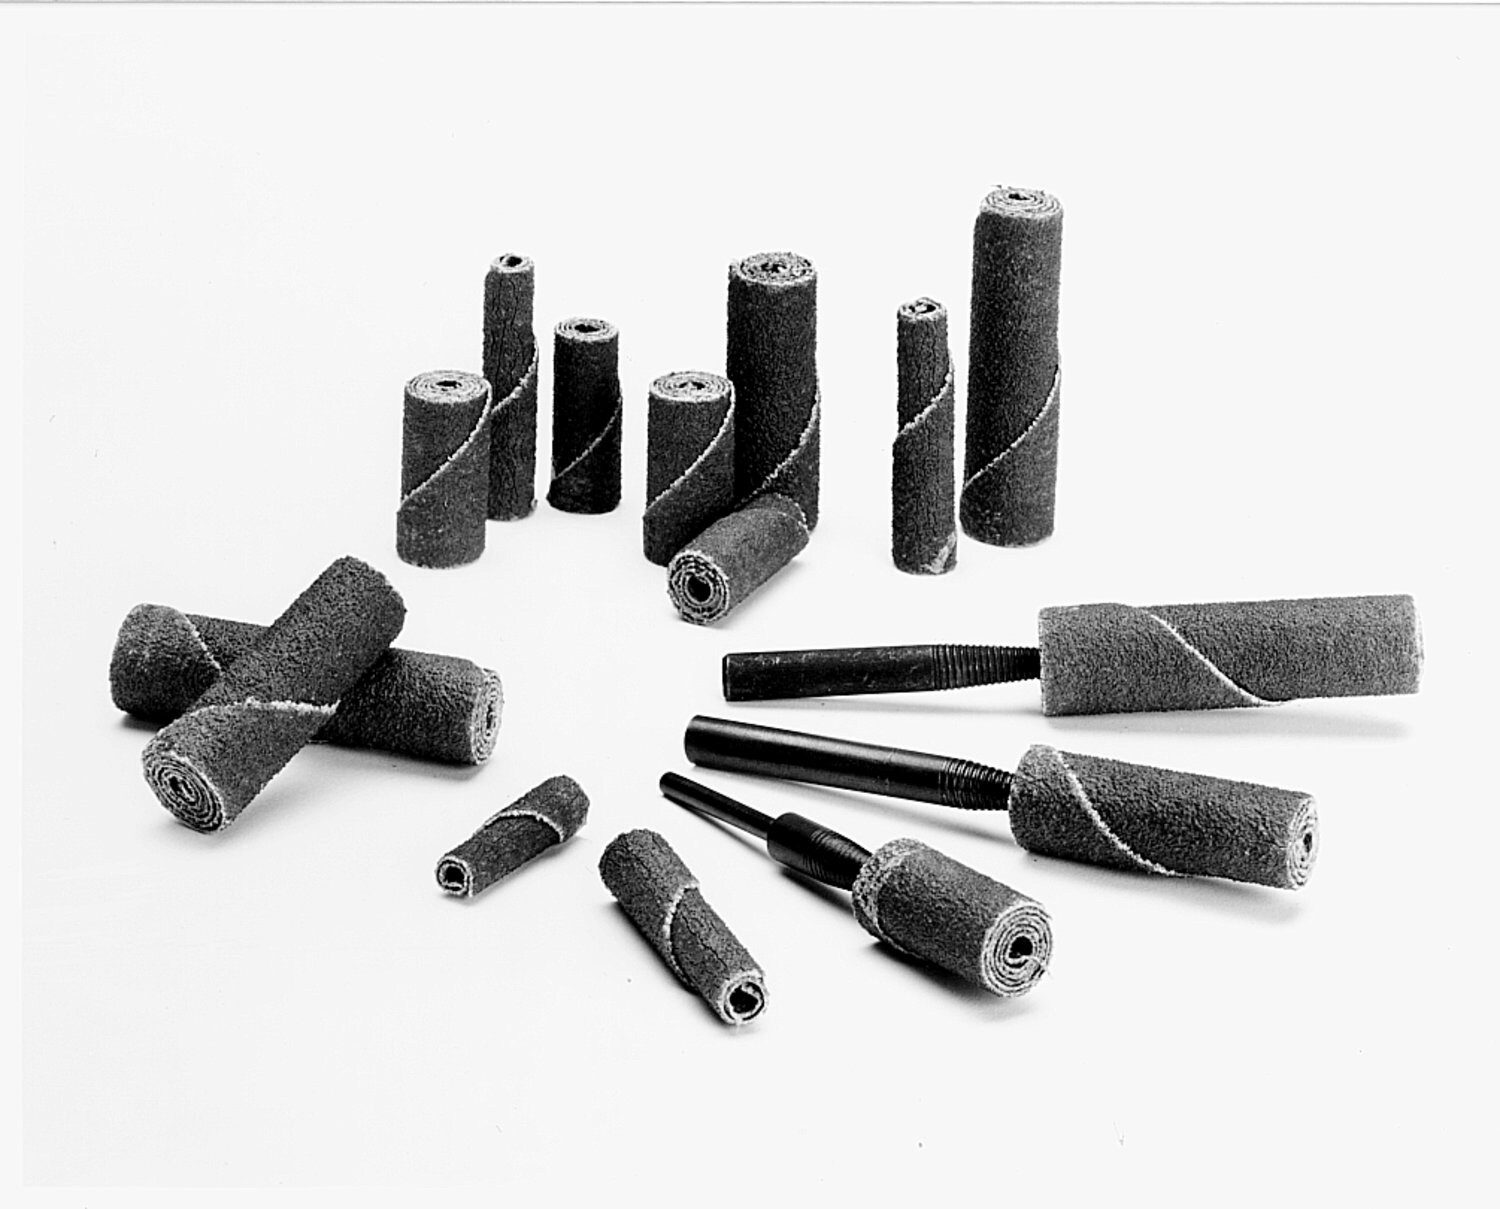 7100102868 - Standard Abrasives Ceramic Cartridge Roll, 730174, CR-SW, 100, 3/4 in x
3 in x 1/4 in, Side Wall, 25 ea/Case